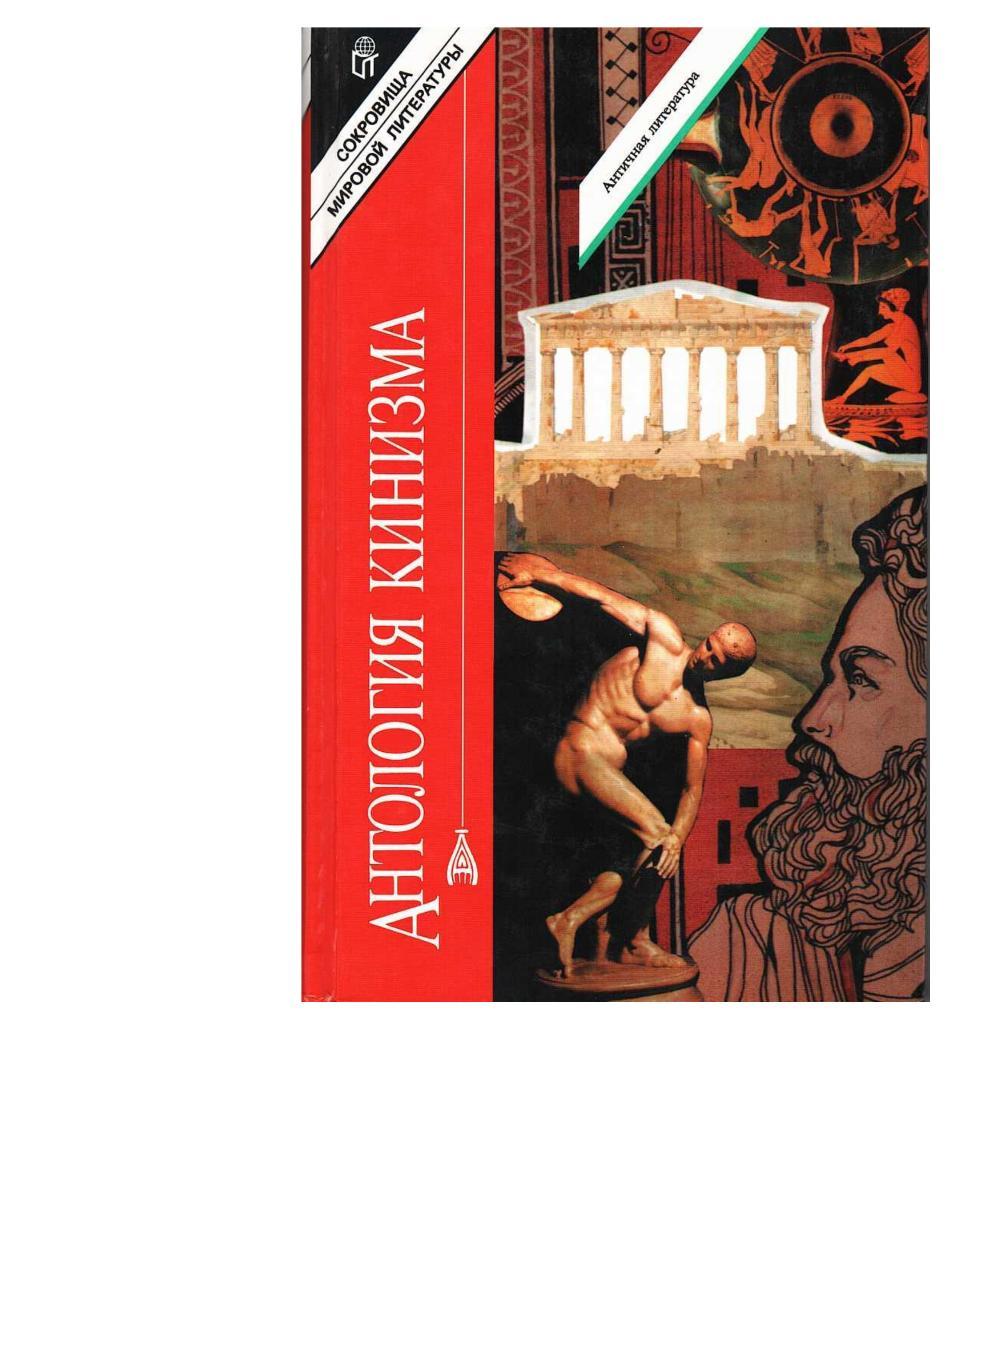 Антология кинизма: Философия неприятия и протеста. – М., 1996.